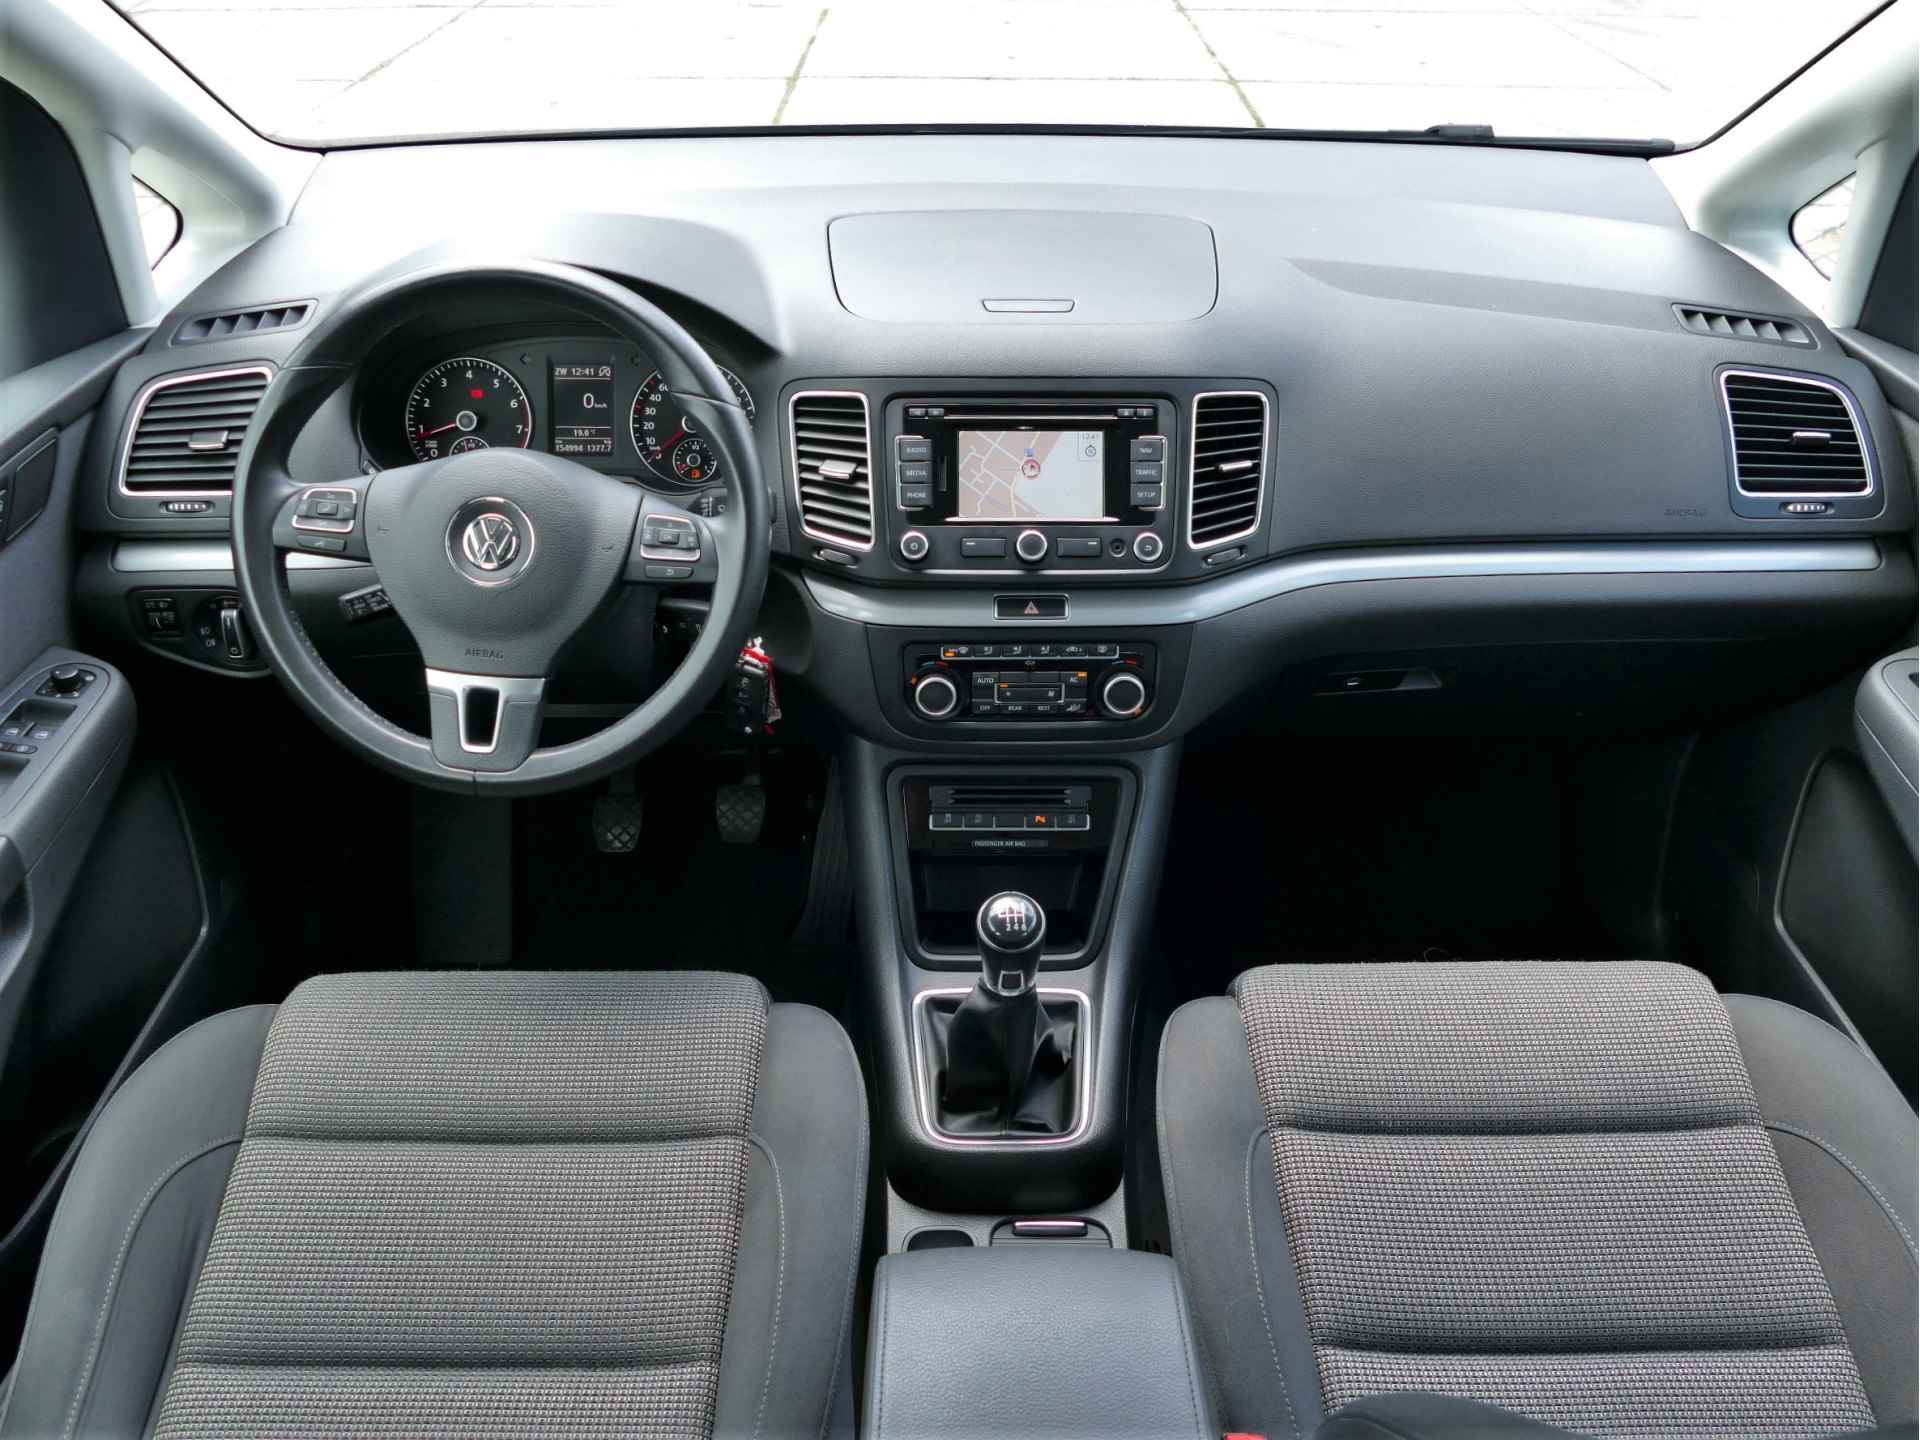 Volkswagen Sharan 1.4 TSI Comfortline 7 persoons | navigatie | cruise control - 15/49